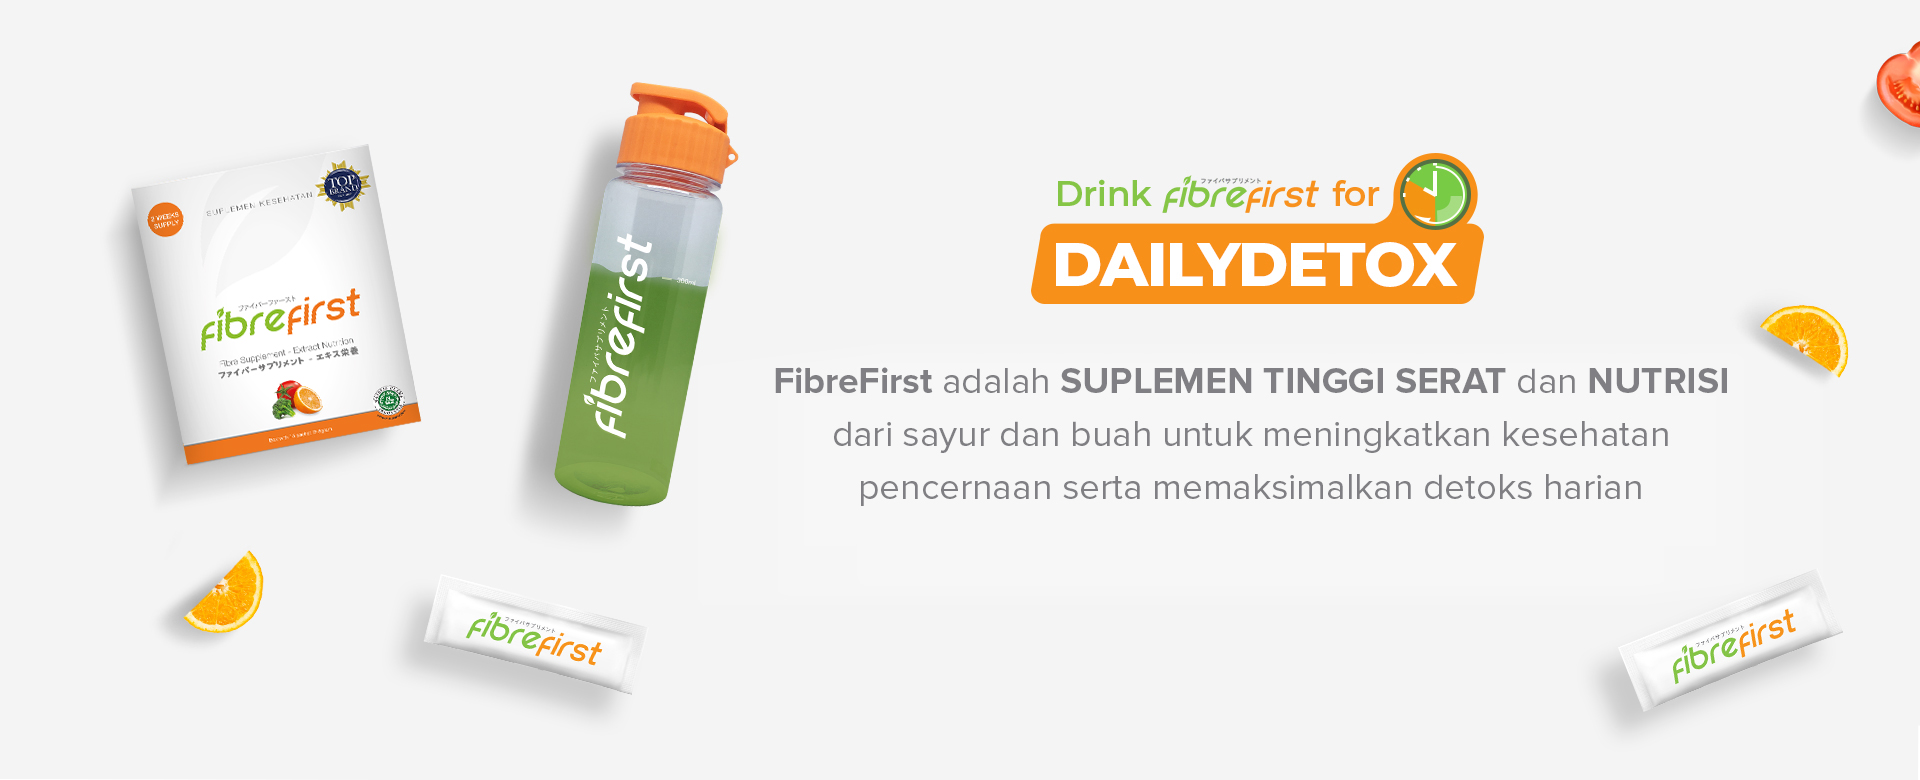 FibreFirst adalah SUPLEMEN TINGGI SERAT dan NUTRISI dari sayur dan buah untuk meningkatkan kesehatan pencernaan serta memaksimalkan detoks harian